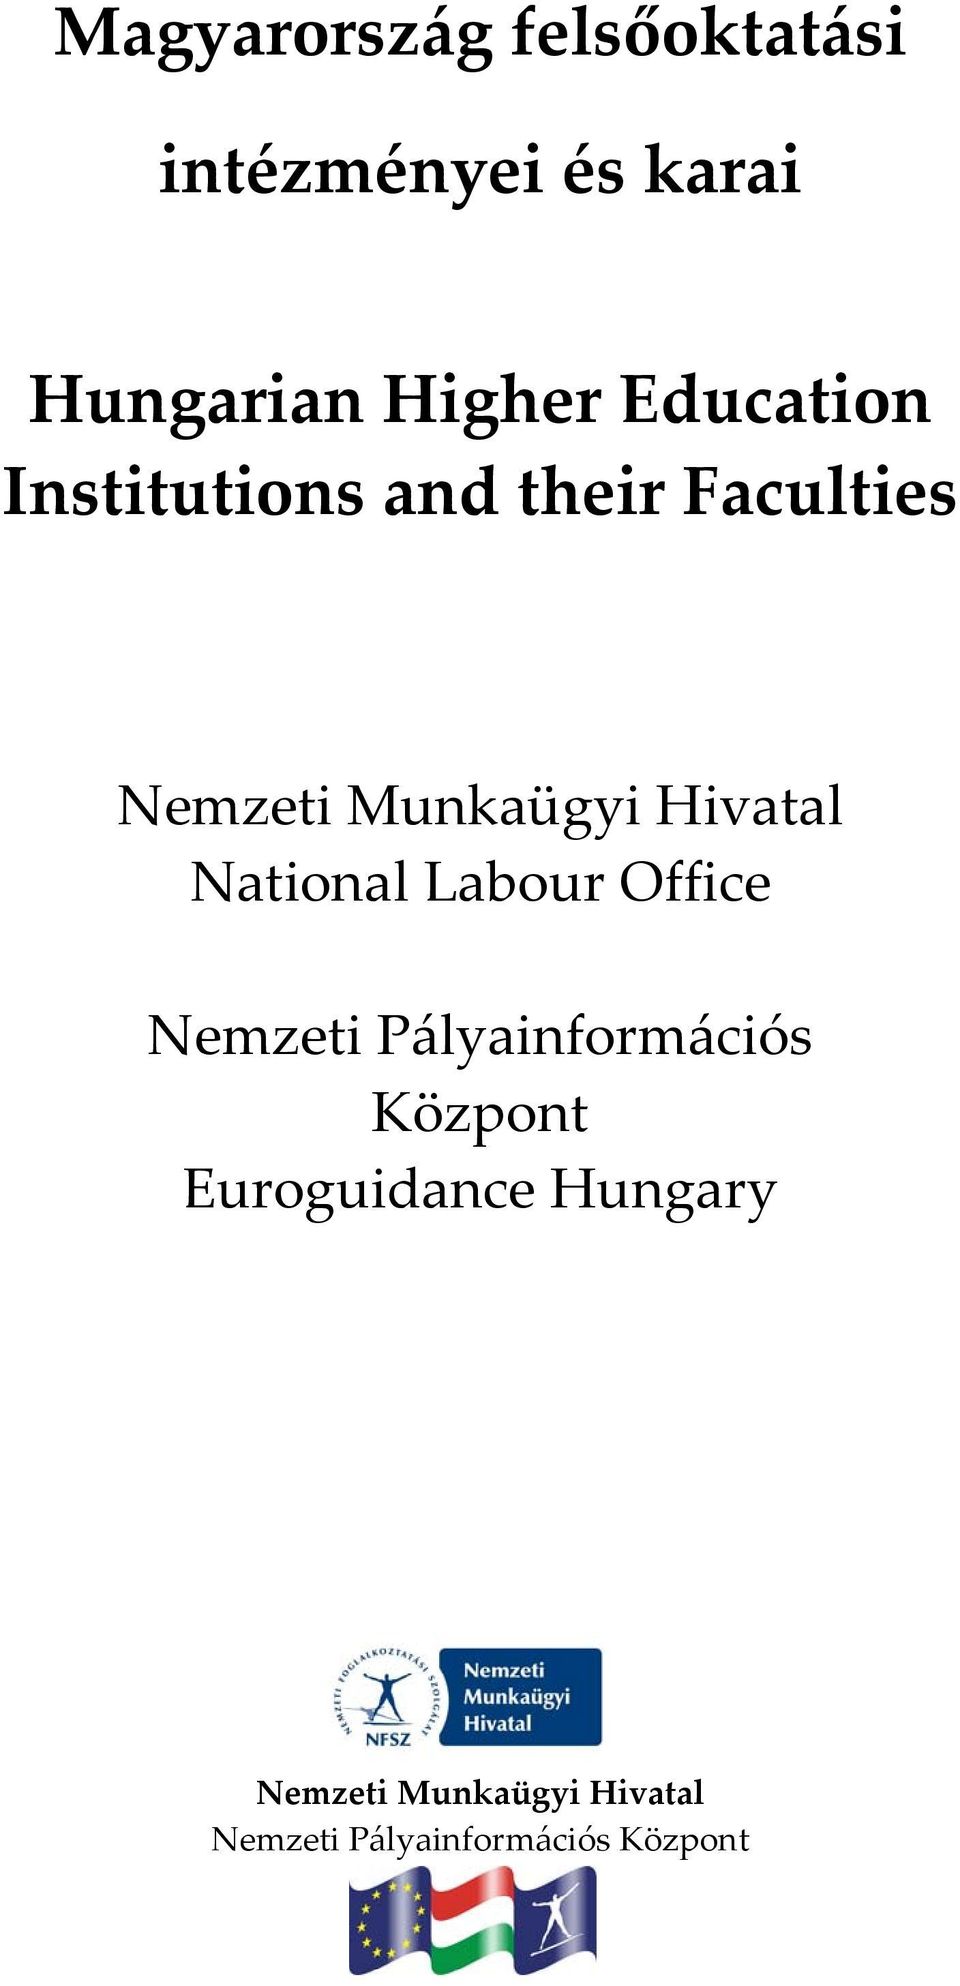 Hivatal National Labour Office Nemzeti Pályainformációs Központ